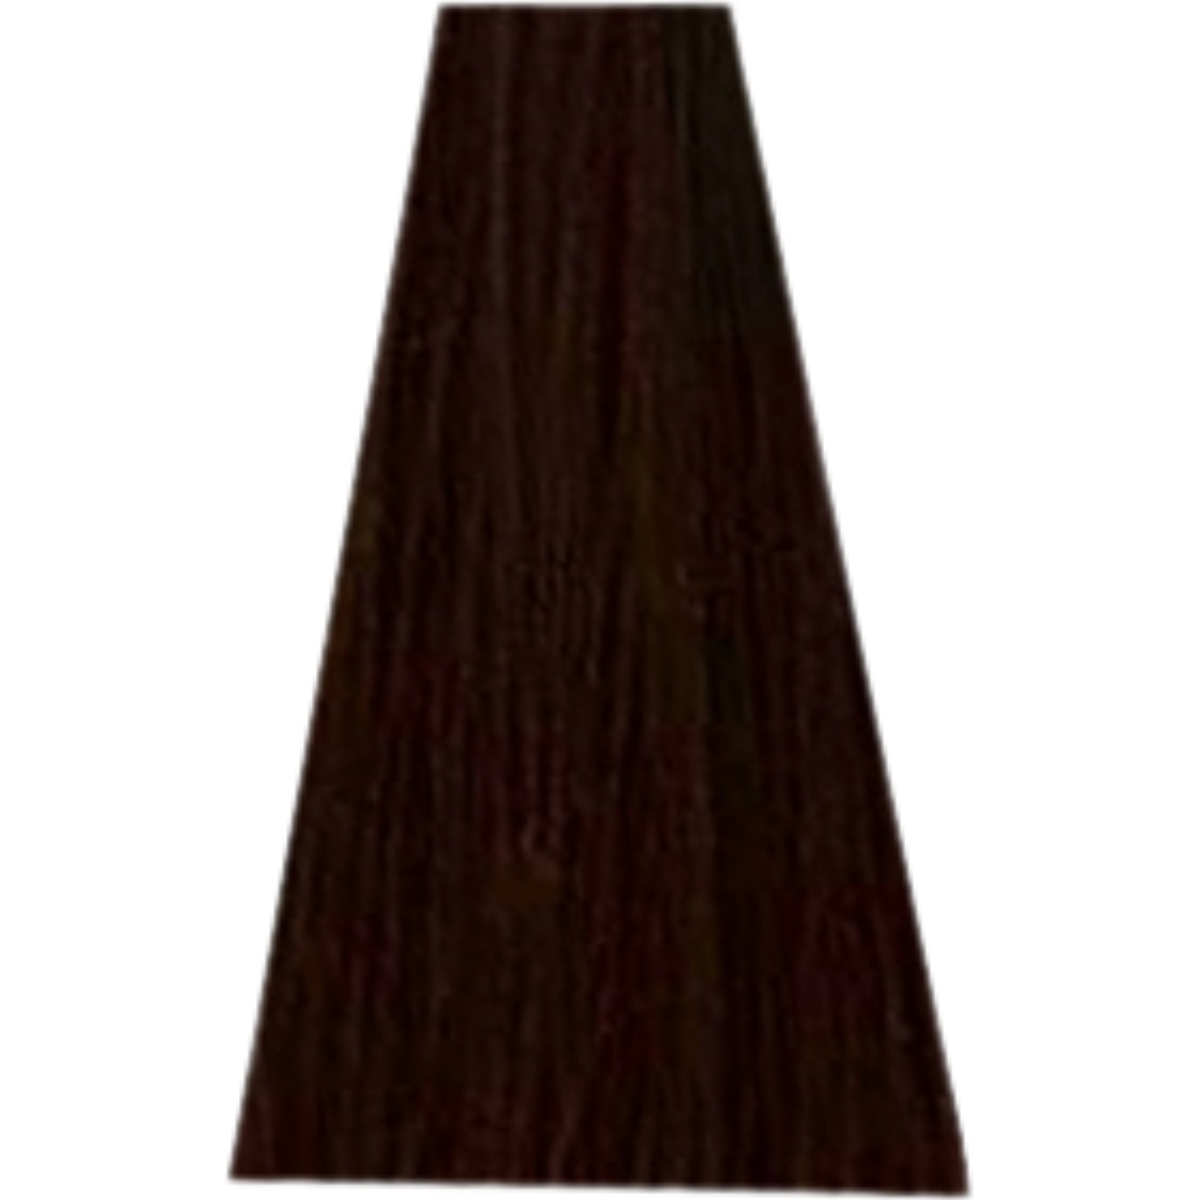 צבע שיער 5.8 MOCHA LIGHT BROWN דיה לייט לוריאל DIA LIGHT LOREAL צבע שטיפה לשיער 50 מ"ל